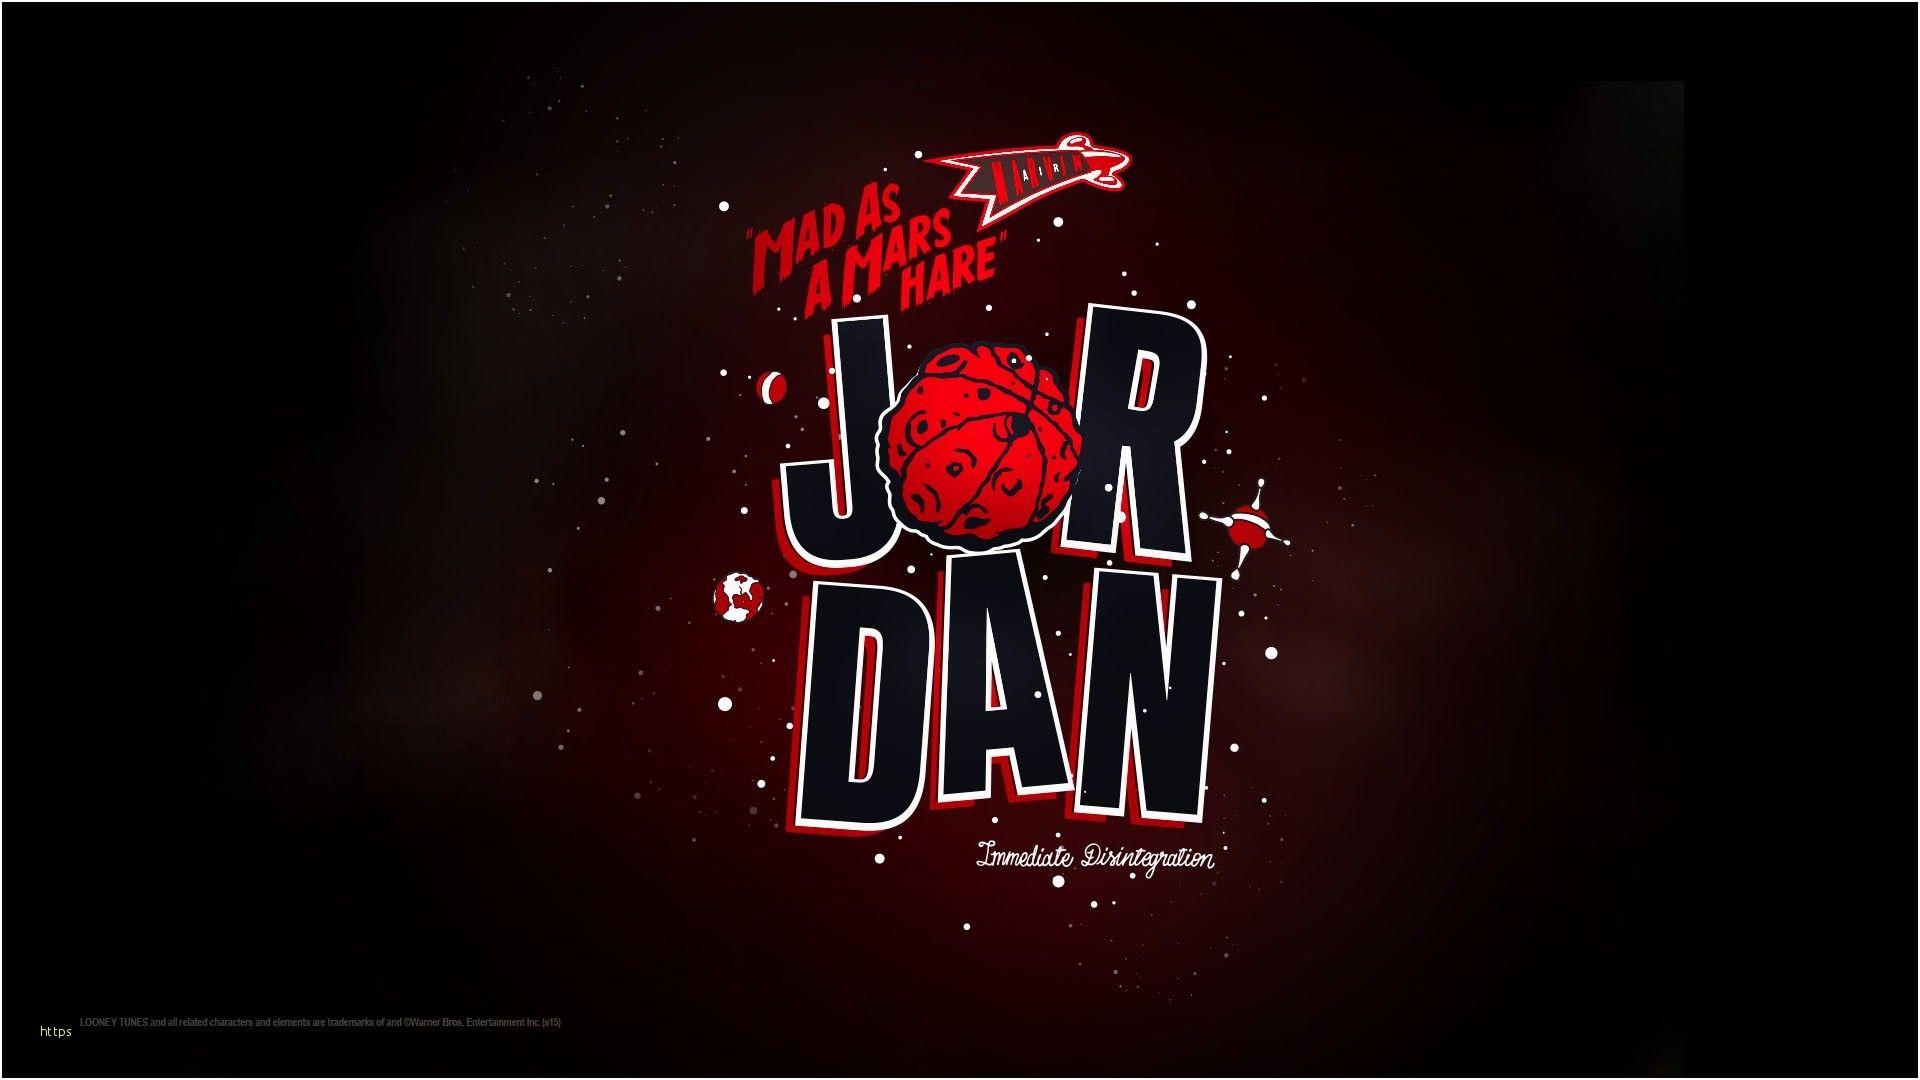 Red Jordan Wallpapers - Top Free Red Jordan Backgrounds - WallpaperAccess